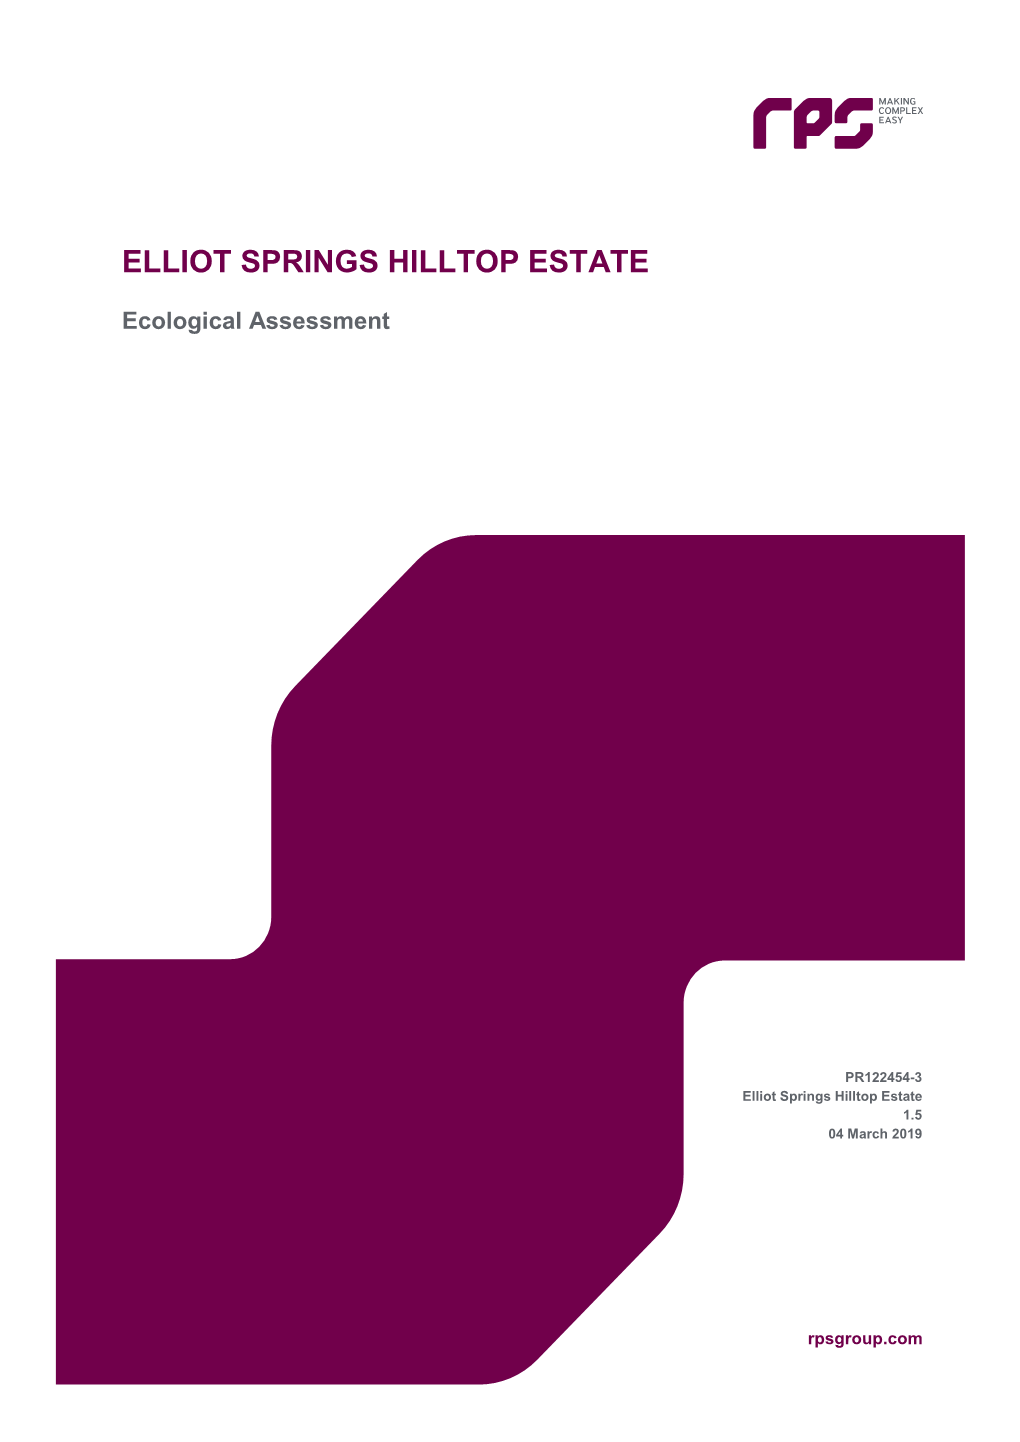 Elliot Springs Hilltop Estate